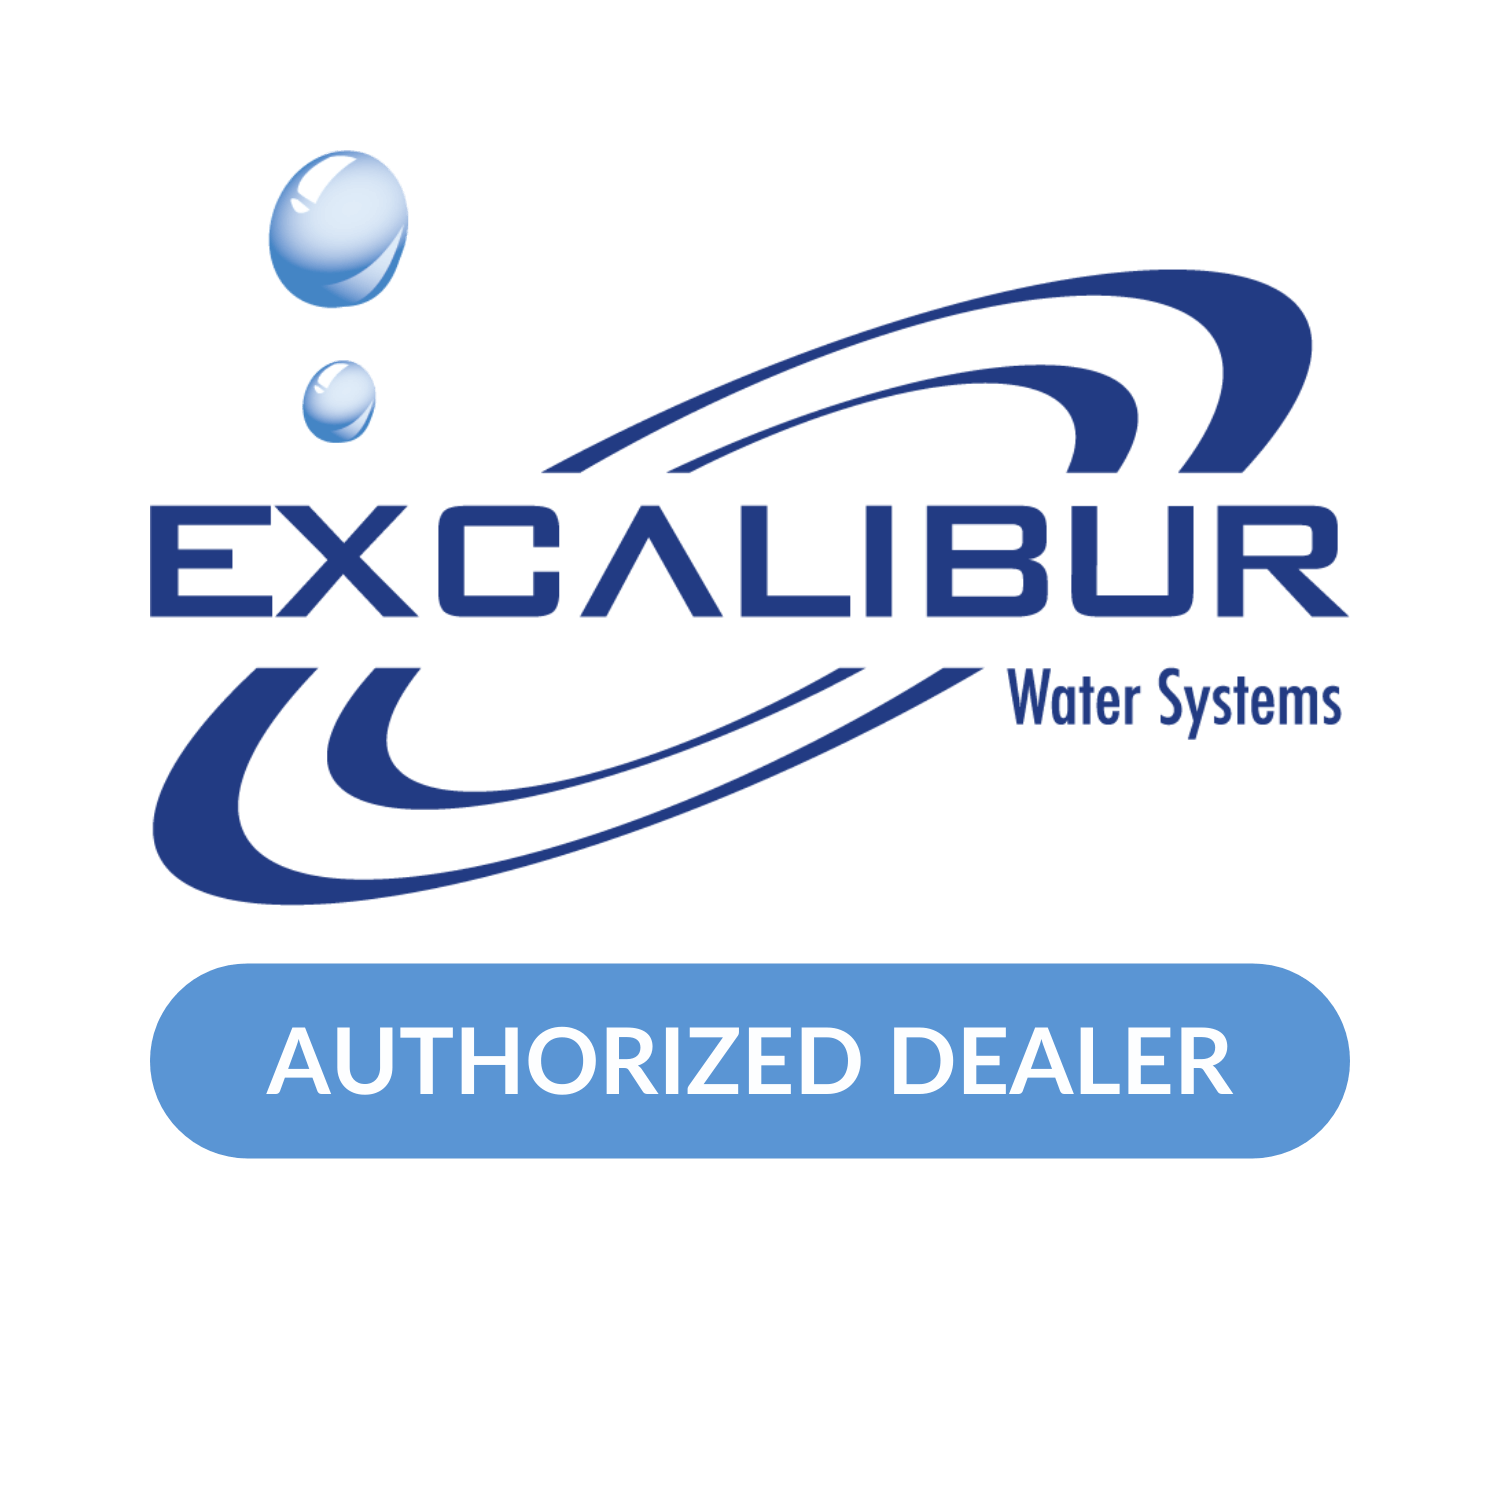 excalibur water